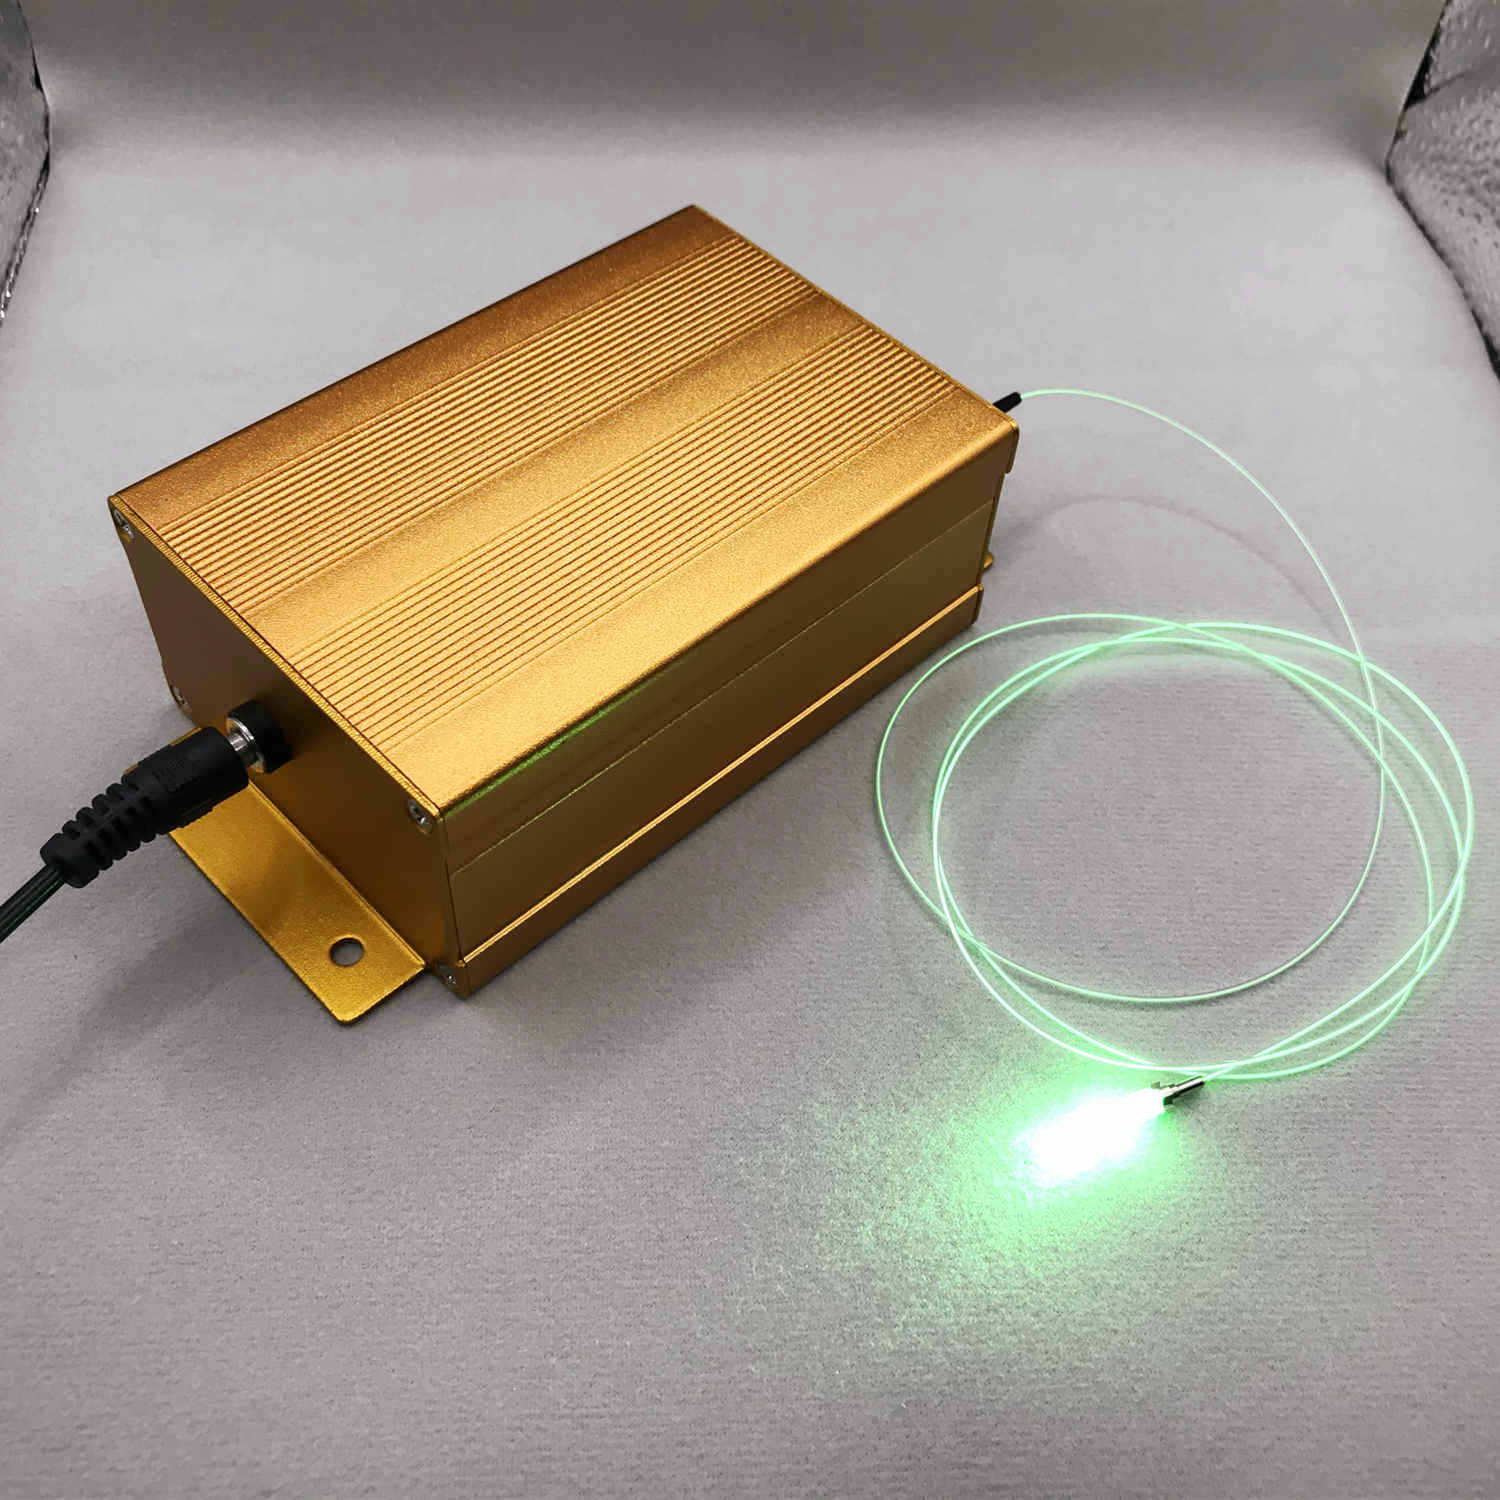 وحدة ليزر مقترنة بالألياف RGB 60 ميجا واط 12 فولت موصل FC للتحكم بالبلوتوث لألياف Corning Fibrance ألياف منتشرة للضوء